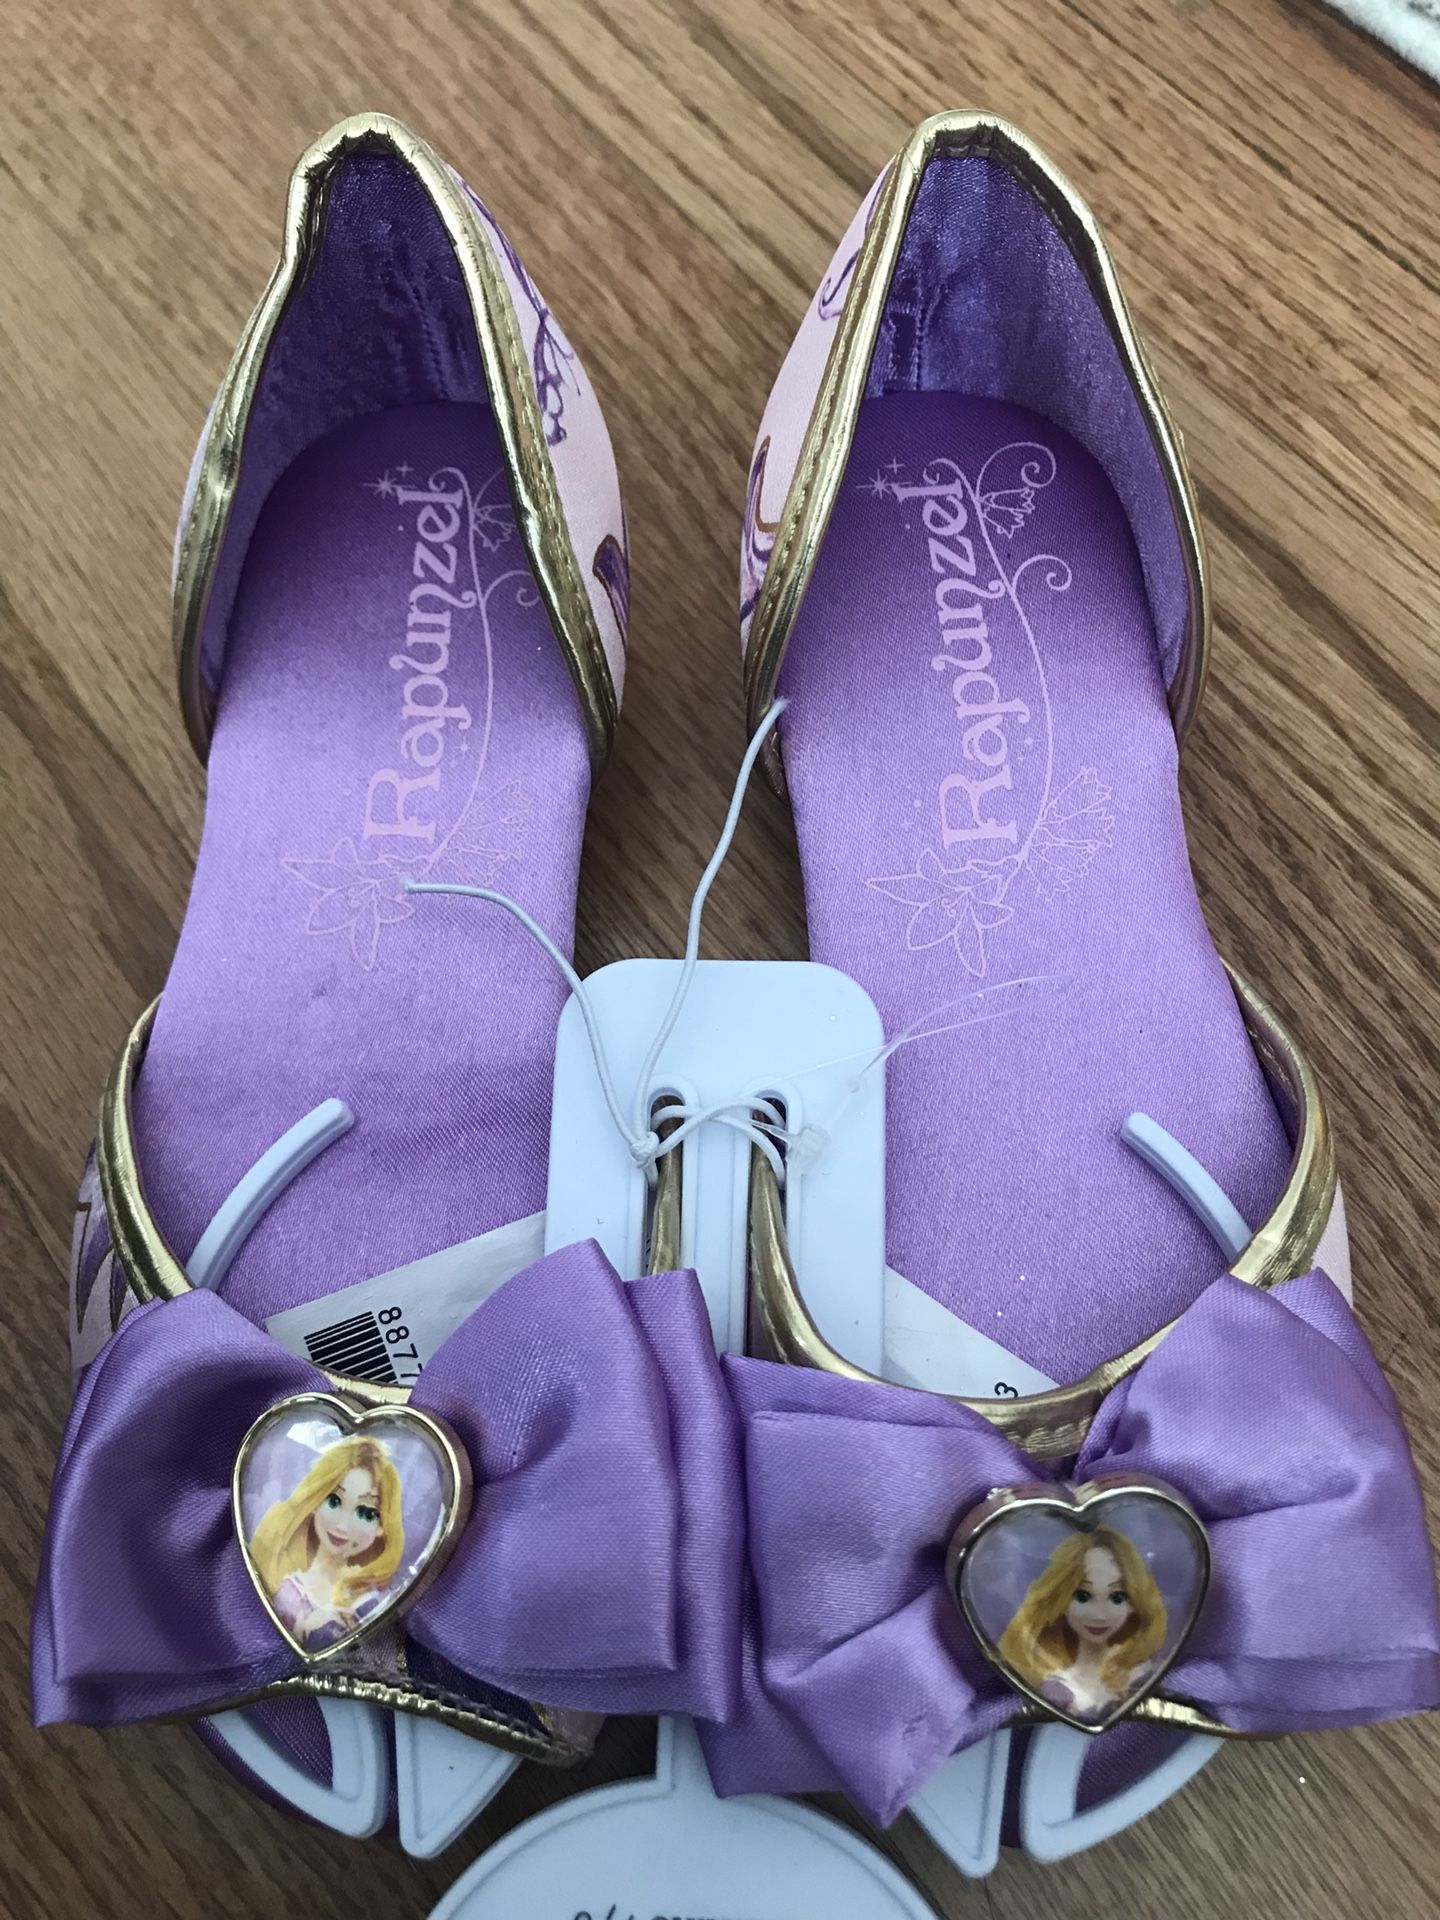 Rapunzel dress up shoes for girls